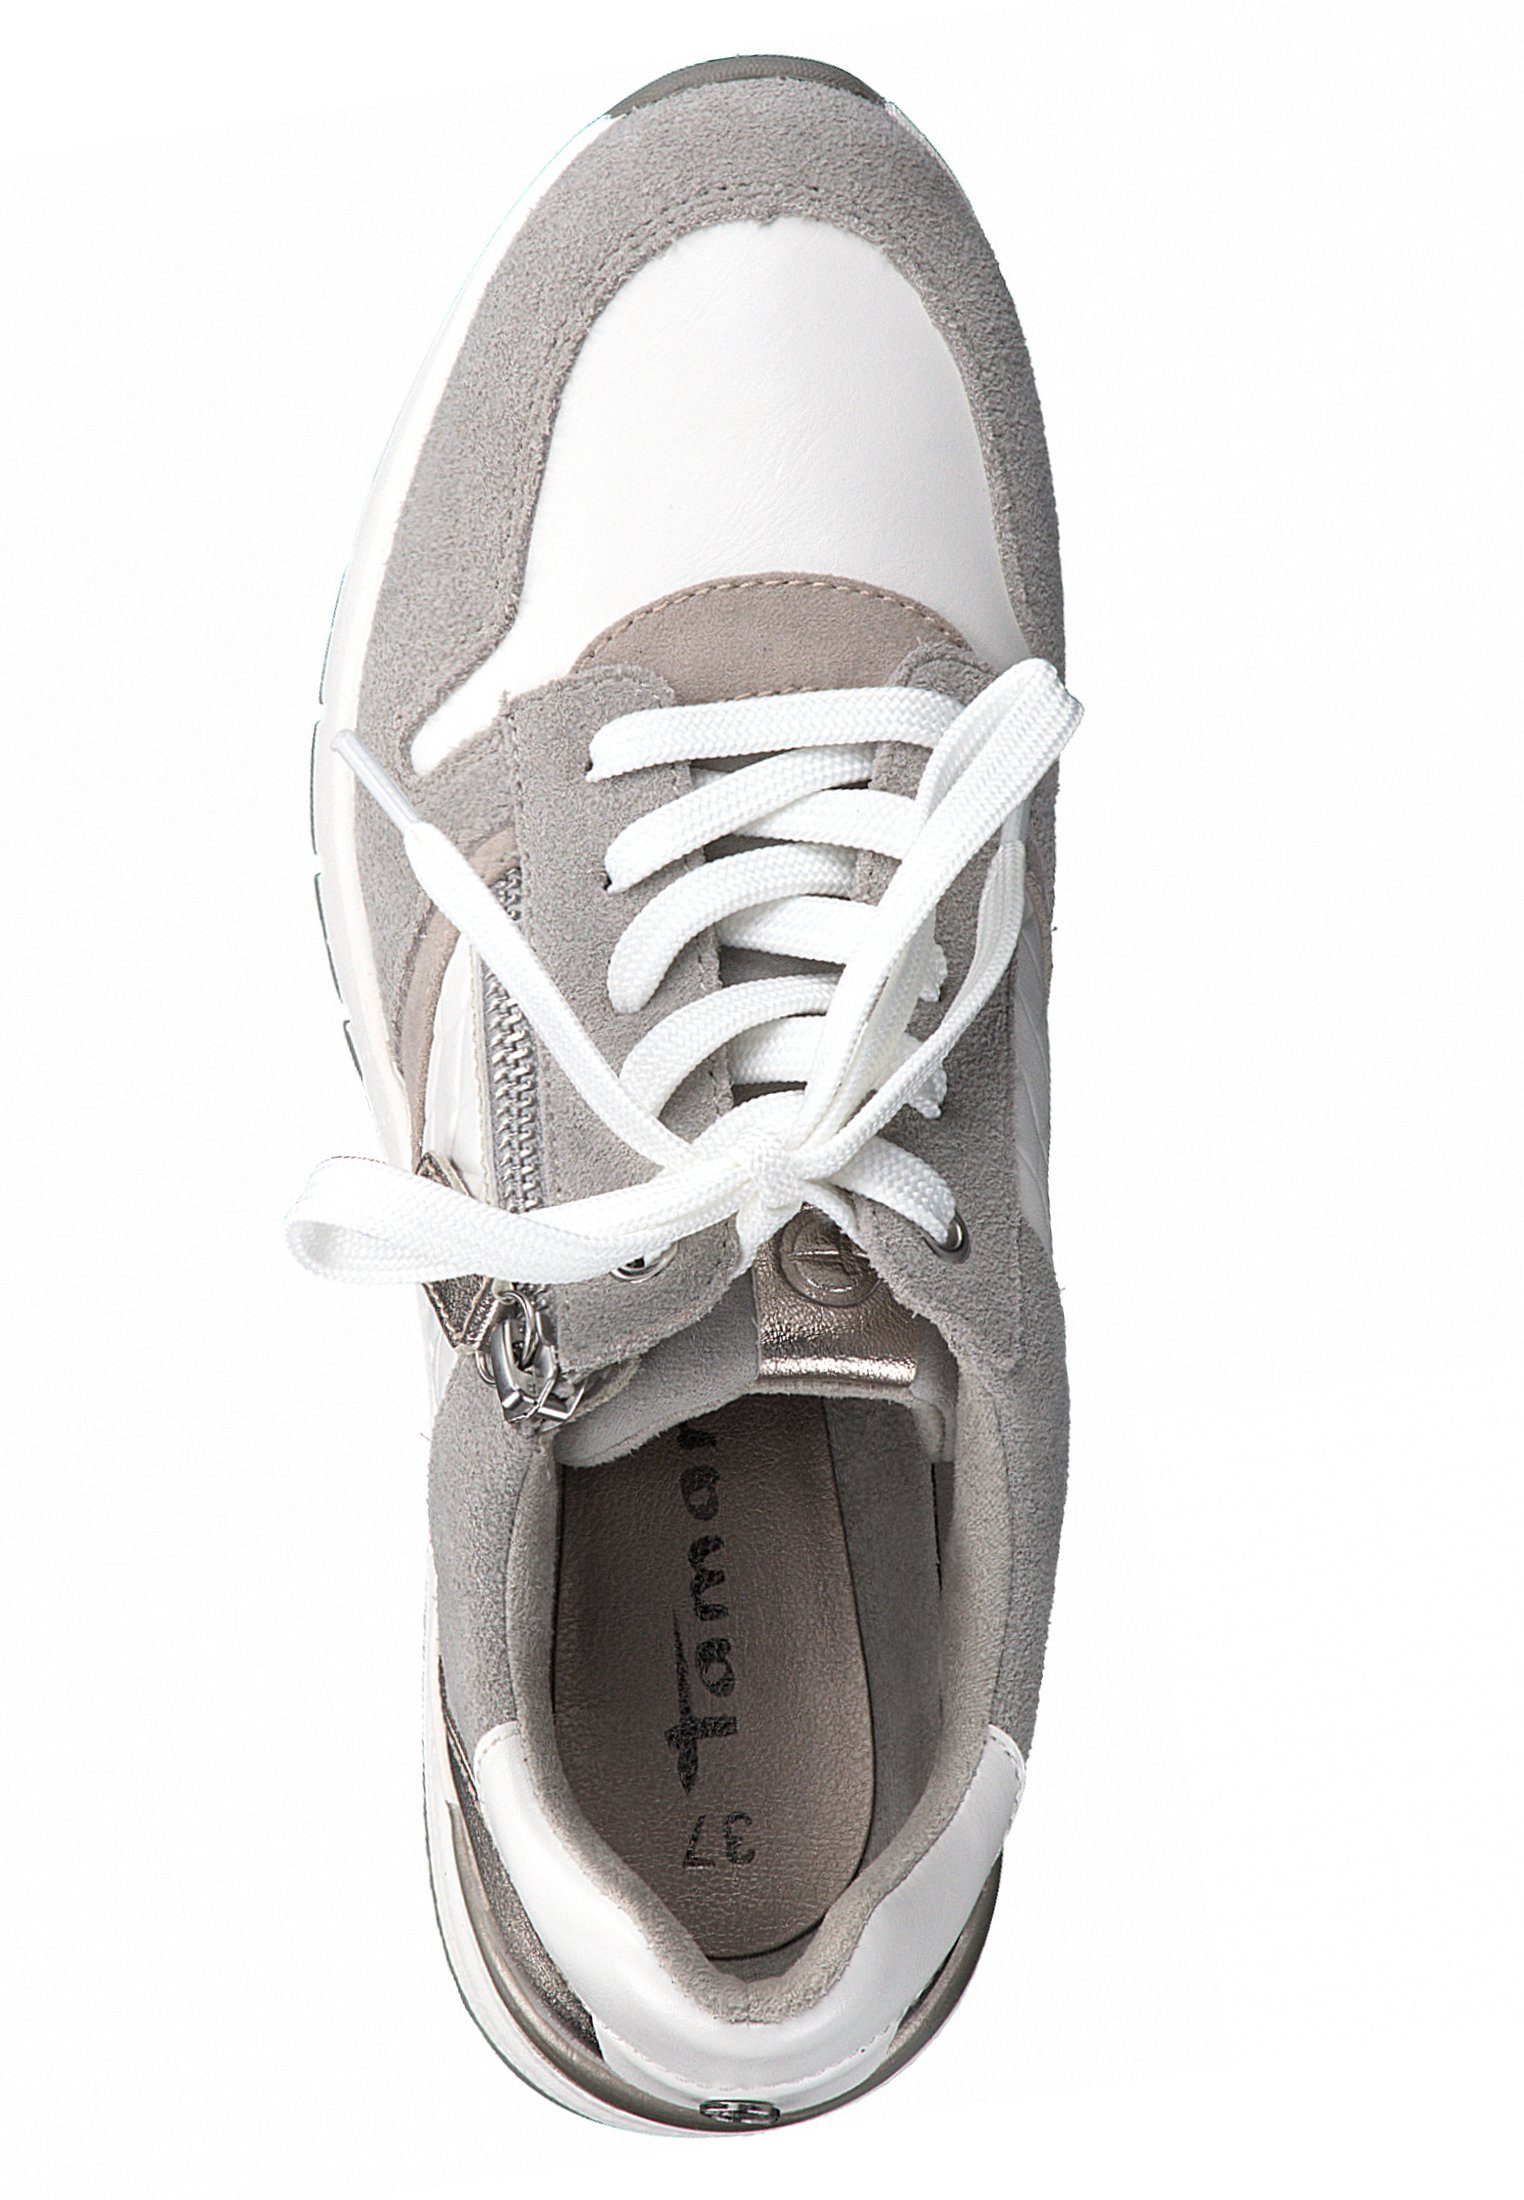 Comb (21201930) 197 WHITE White 1-23702-26 Sneaker Tamaris COMB